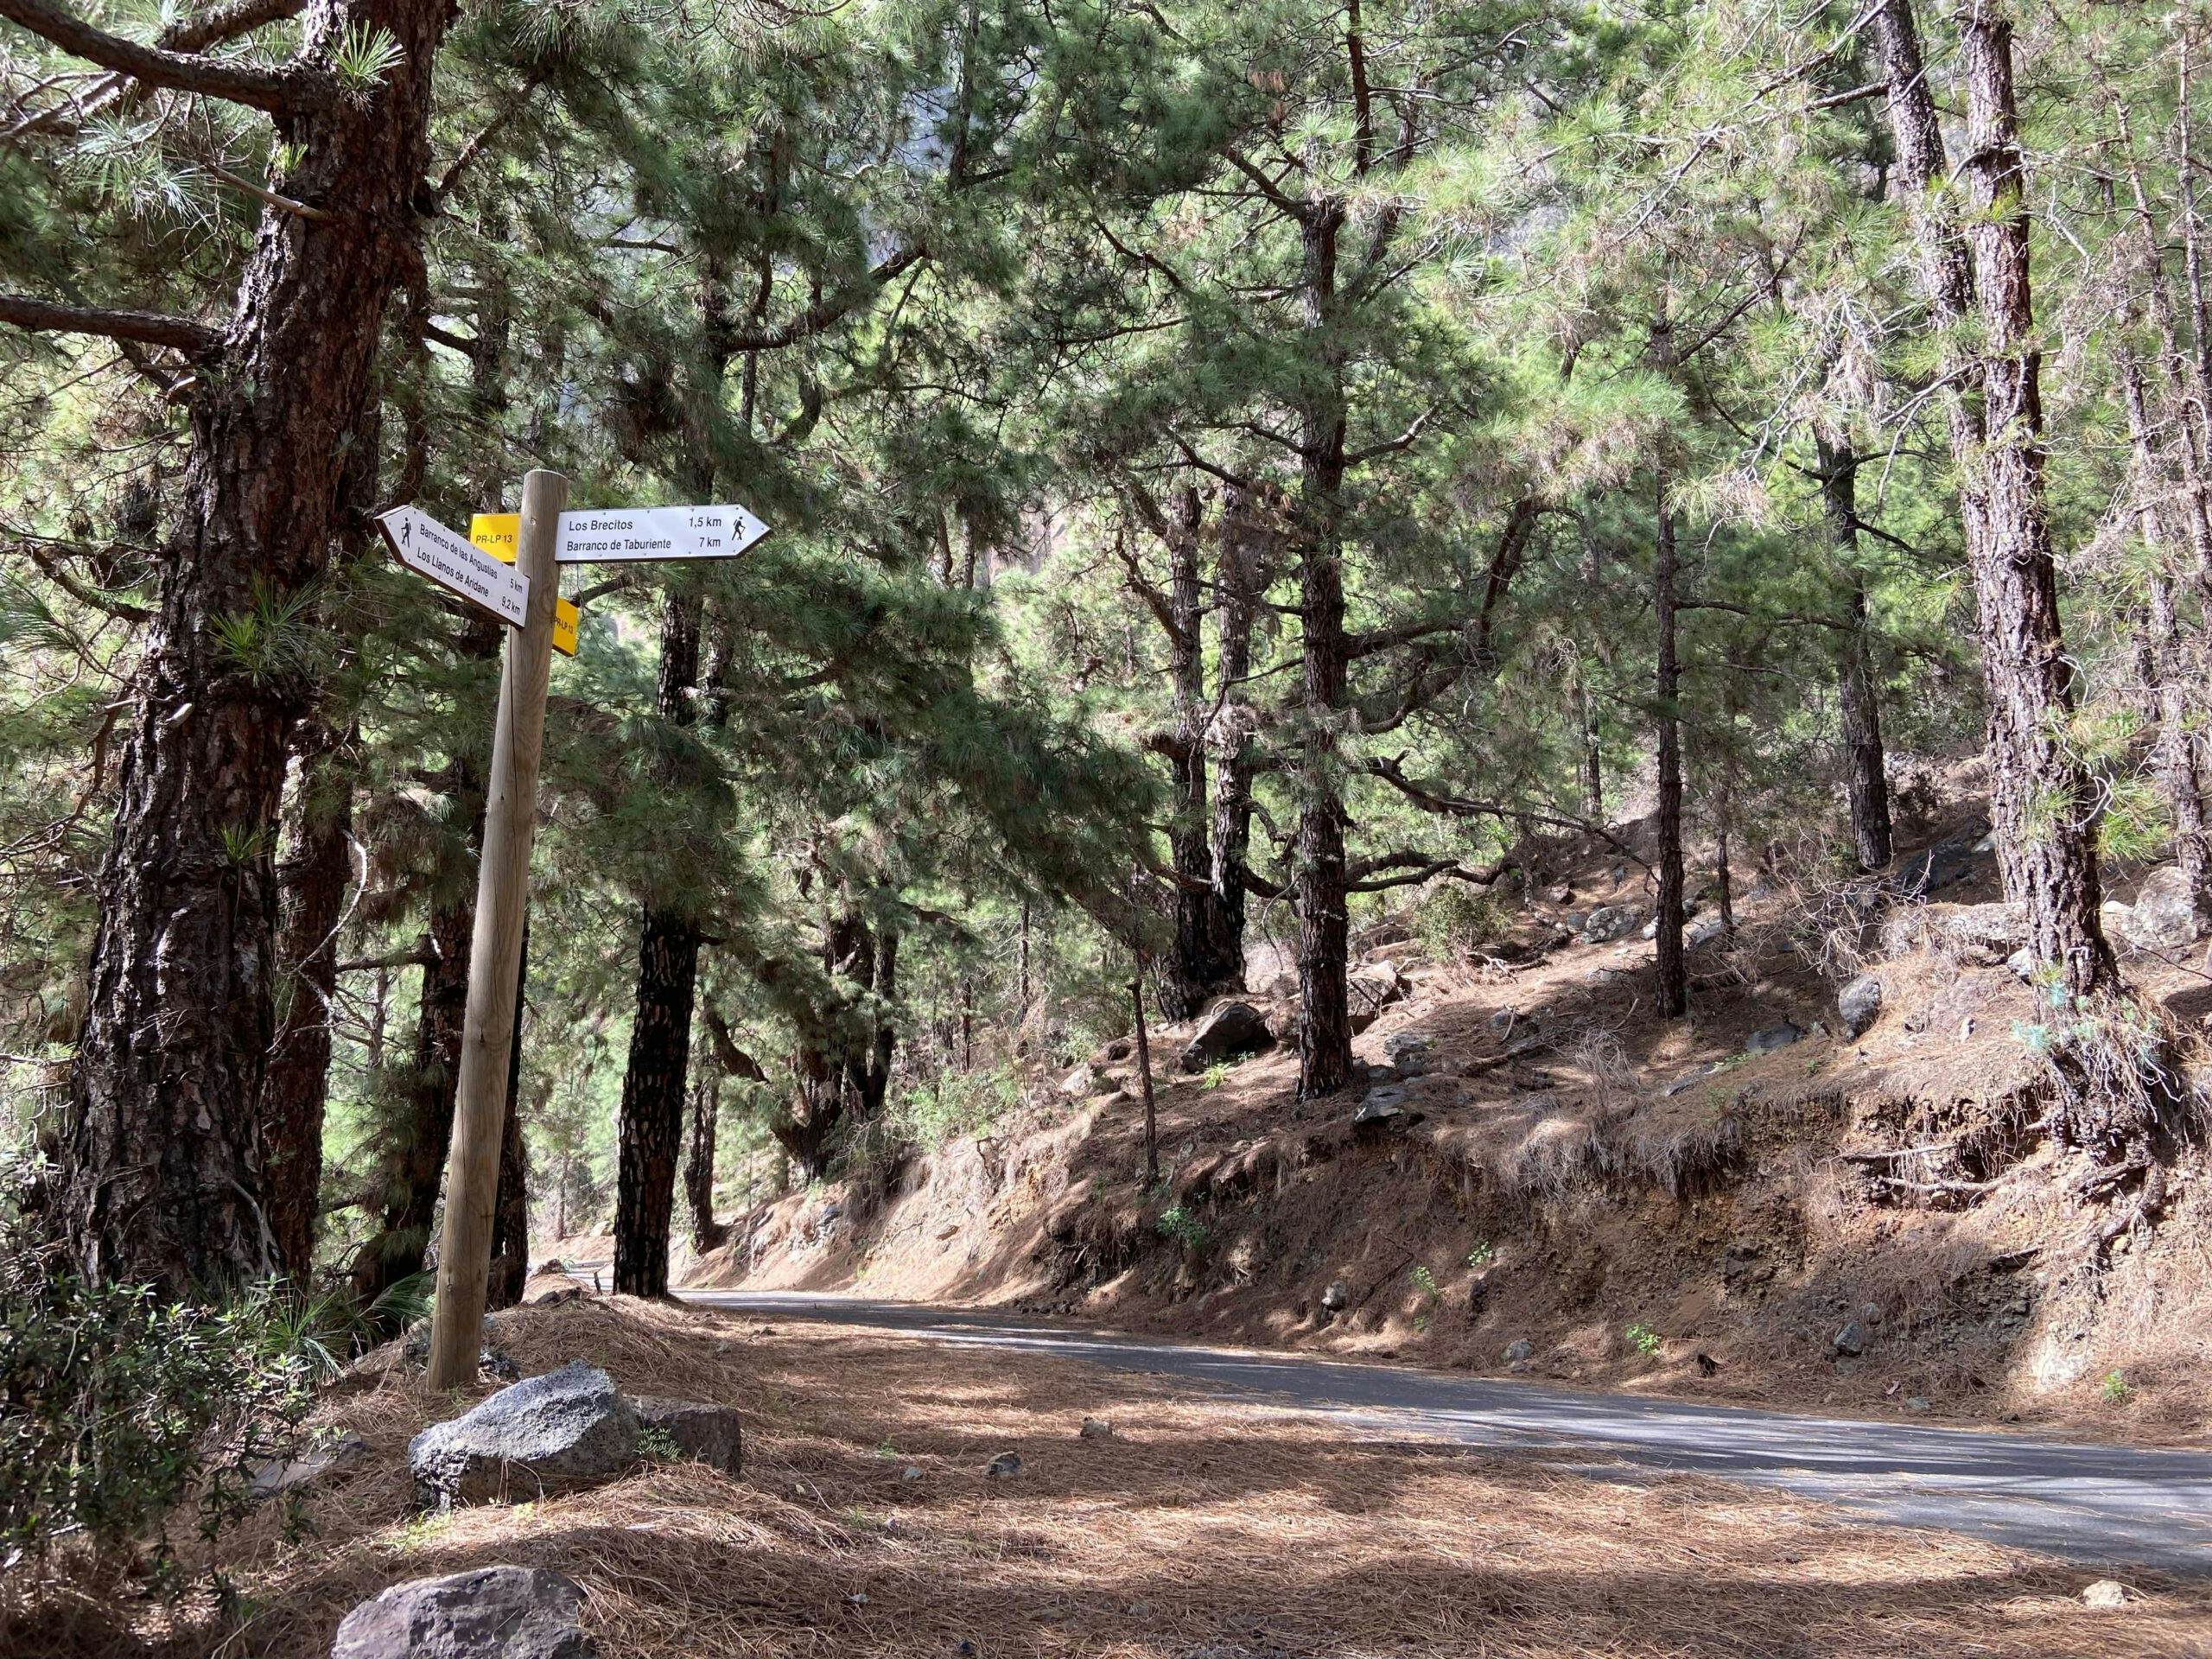 Way back - road and hiking trail 1.5 kilometres behind Mirador Los Brecitos